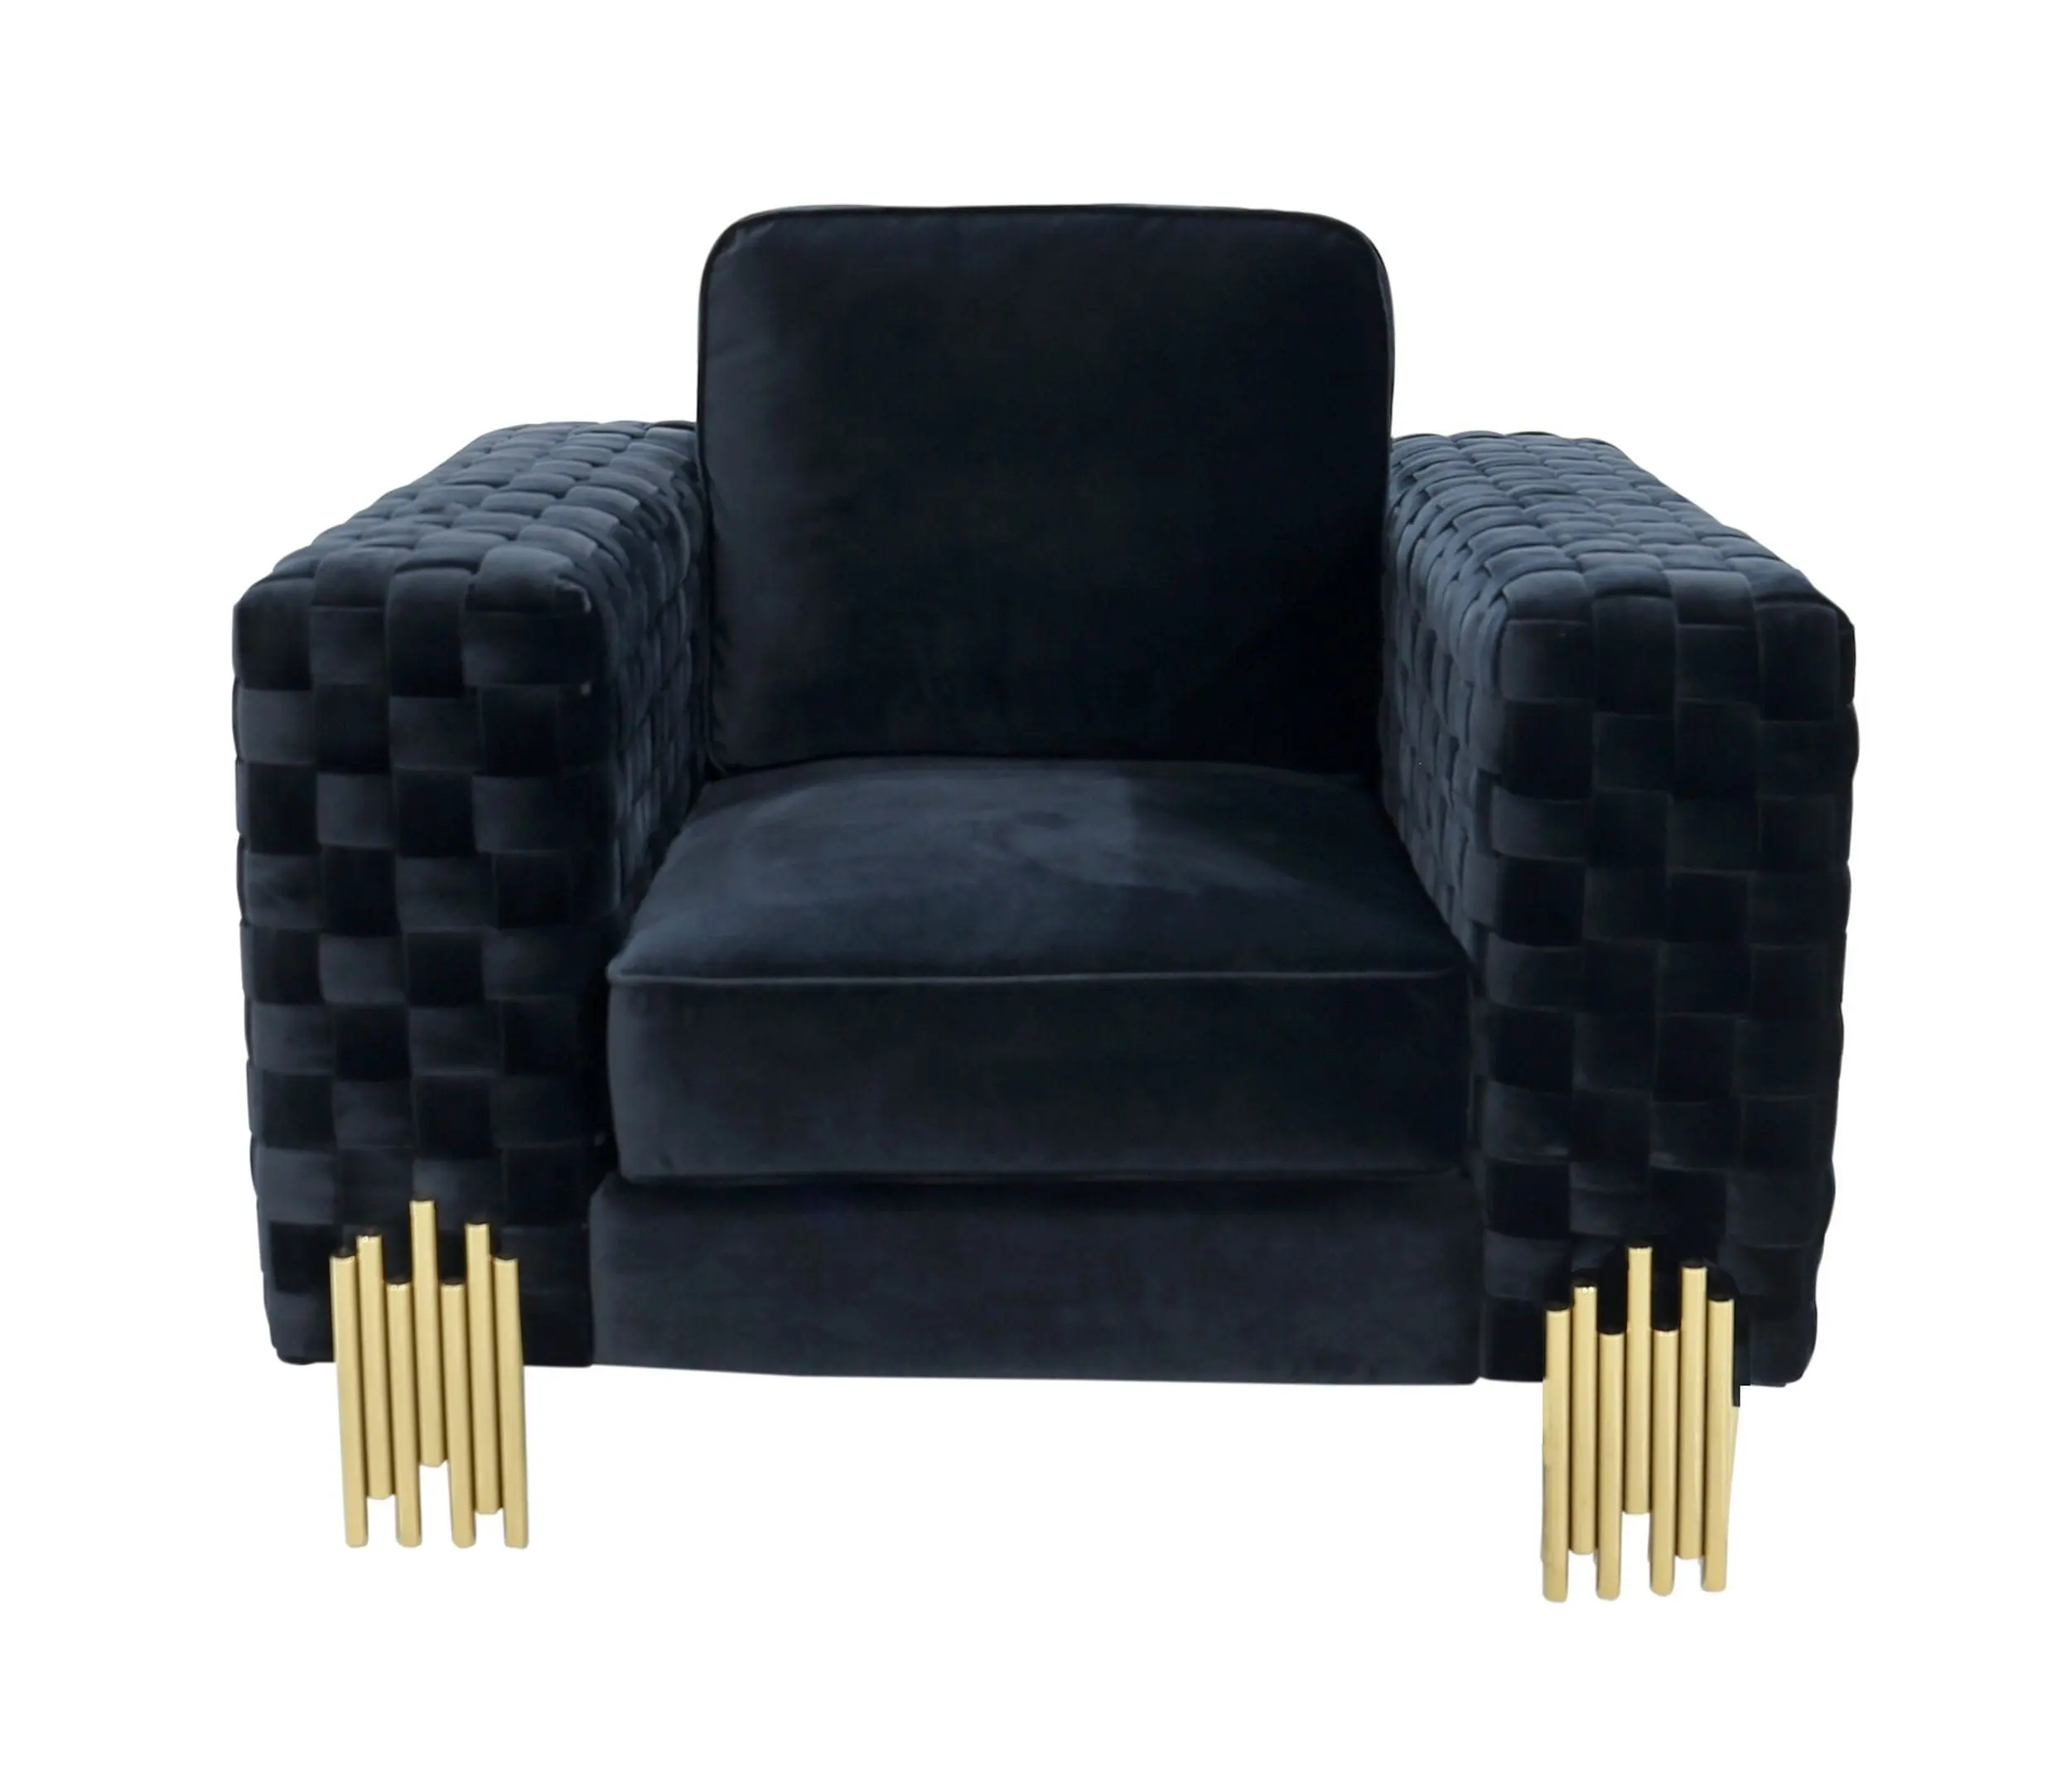 PZCN домашний современный дизайн мебель для гостиной корзина плетеная бархатная диван набор с золотистой ножкой из нержавеющей стали